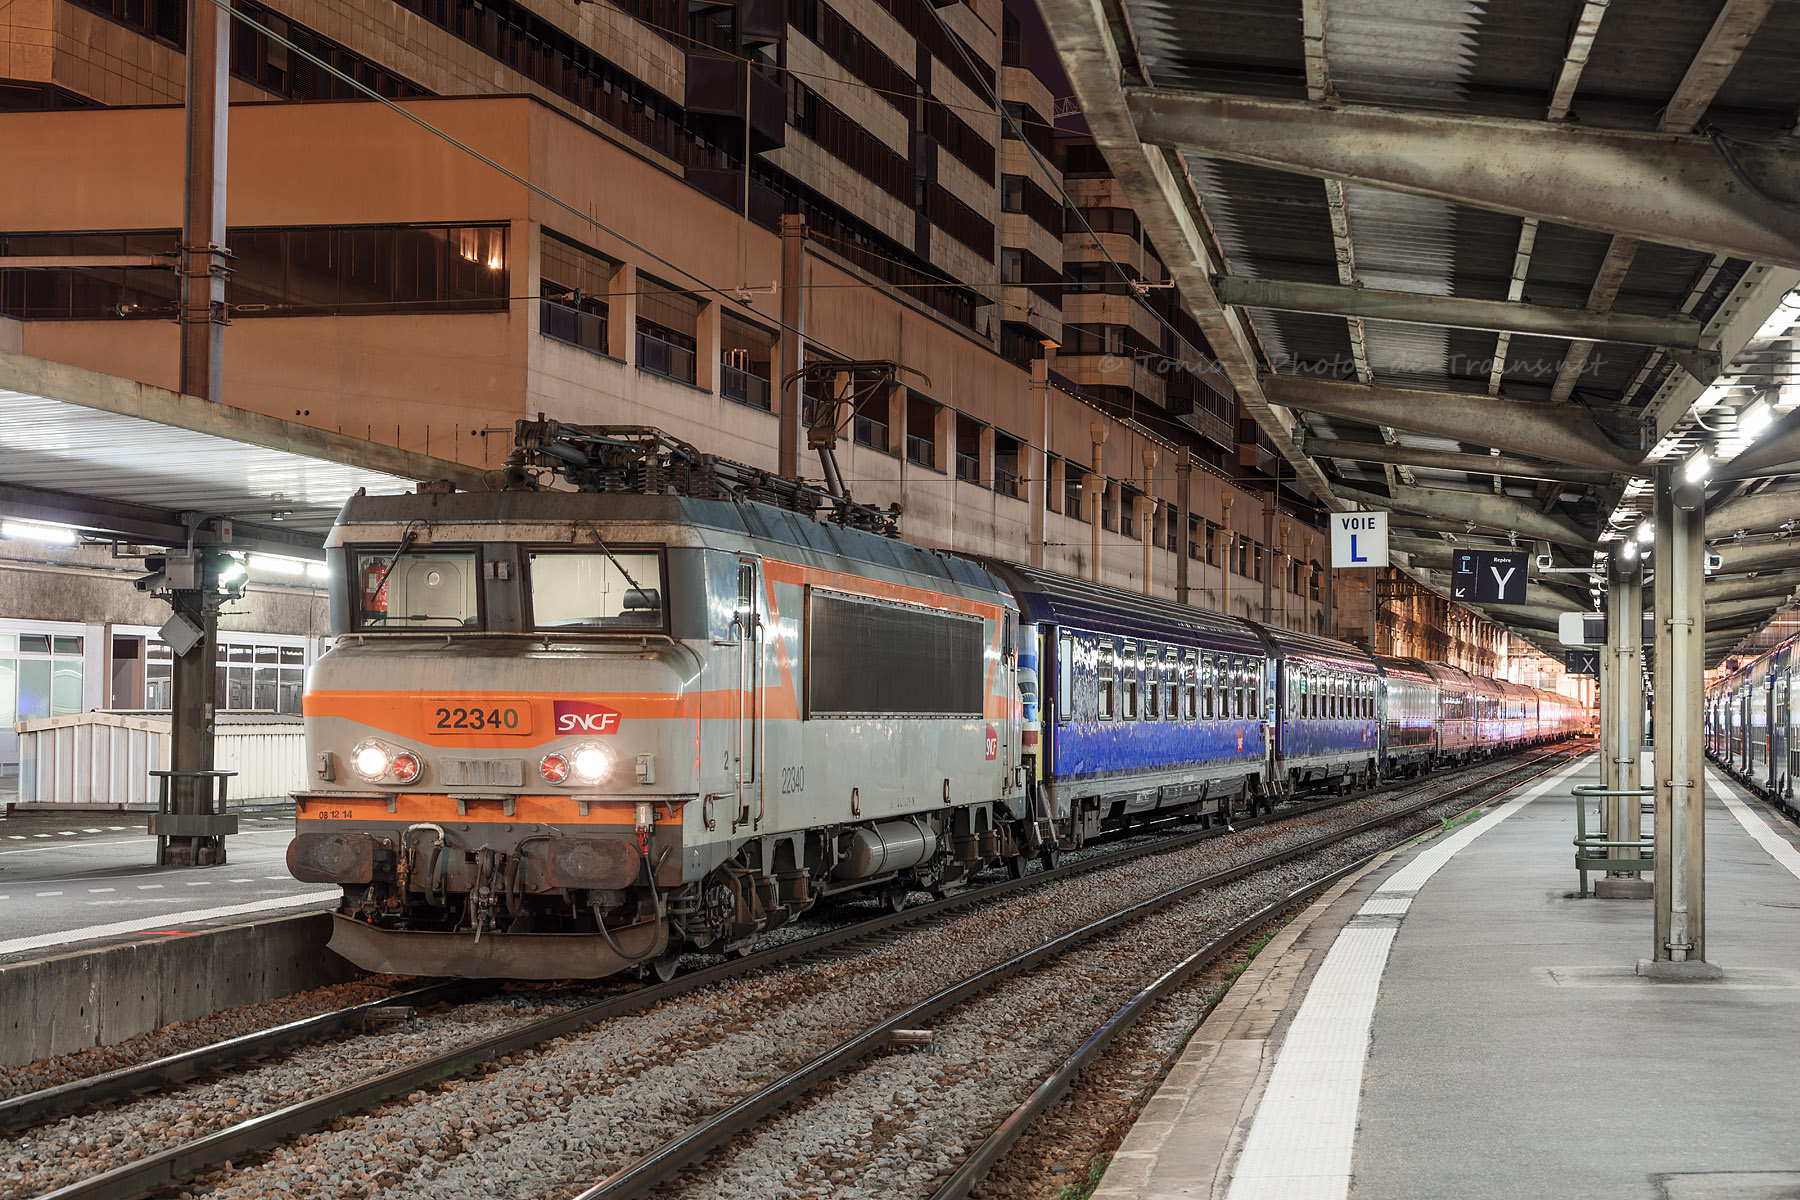 Dans quelques minutes, le Train de la présidentielle, vu ici à Gare de Lyon, va repartir de la capitale en direction d'Amiens.

Ce train exposition retrace les élections présidentielles, de 1958 à aujourd'hui.